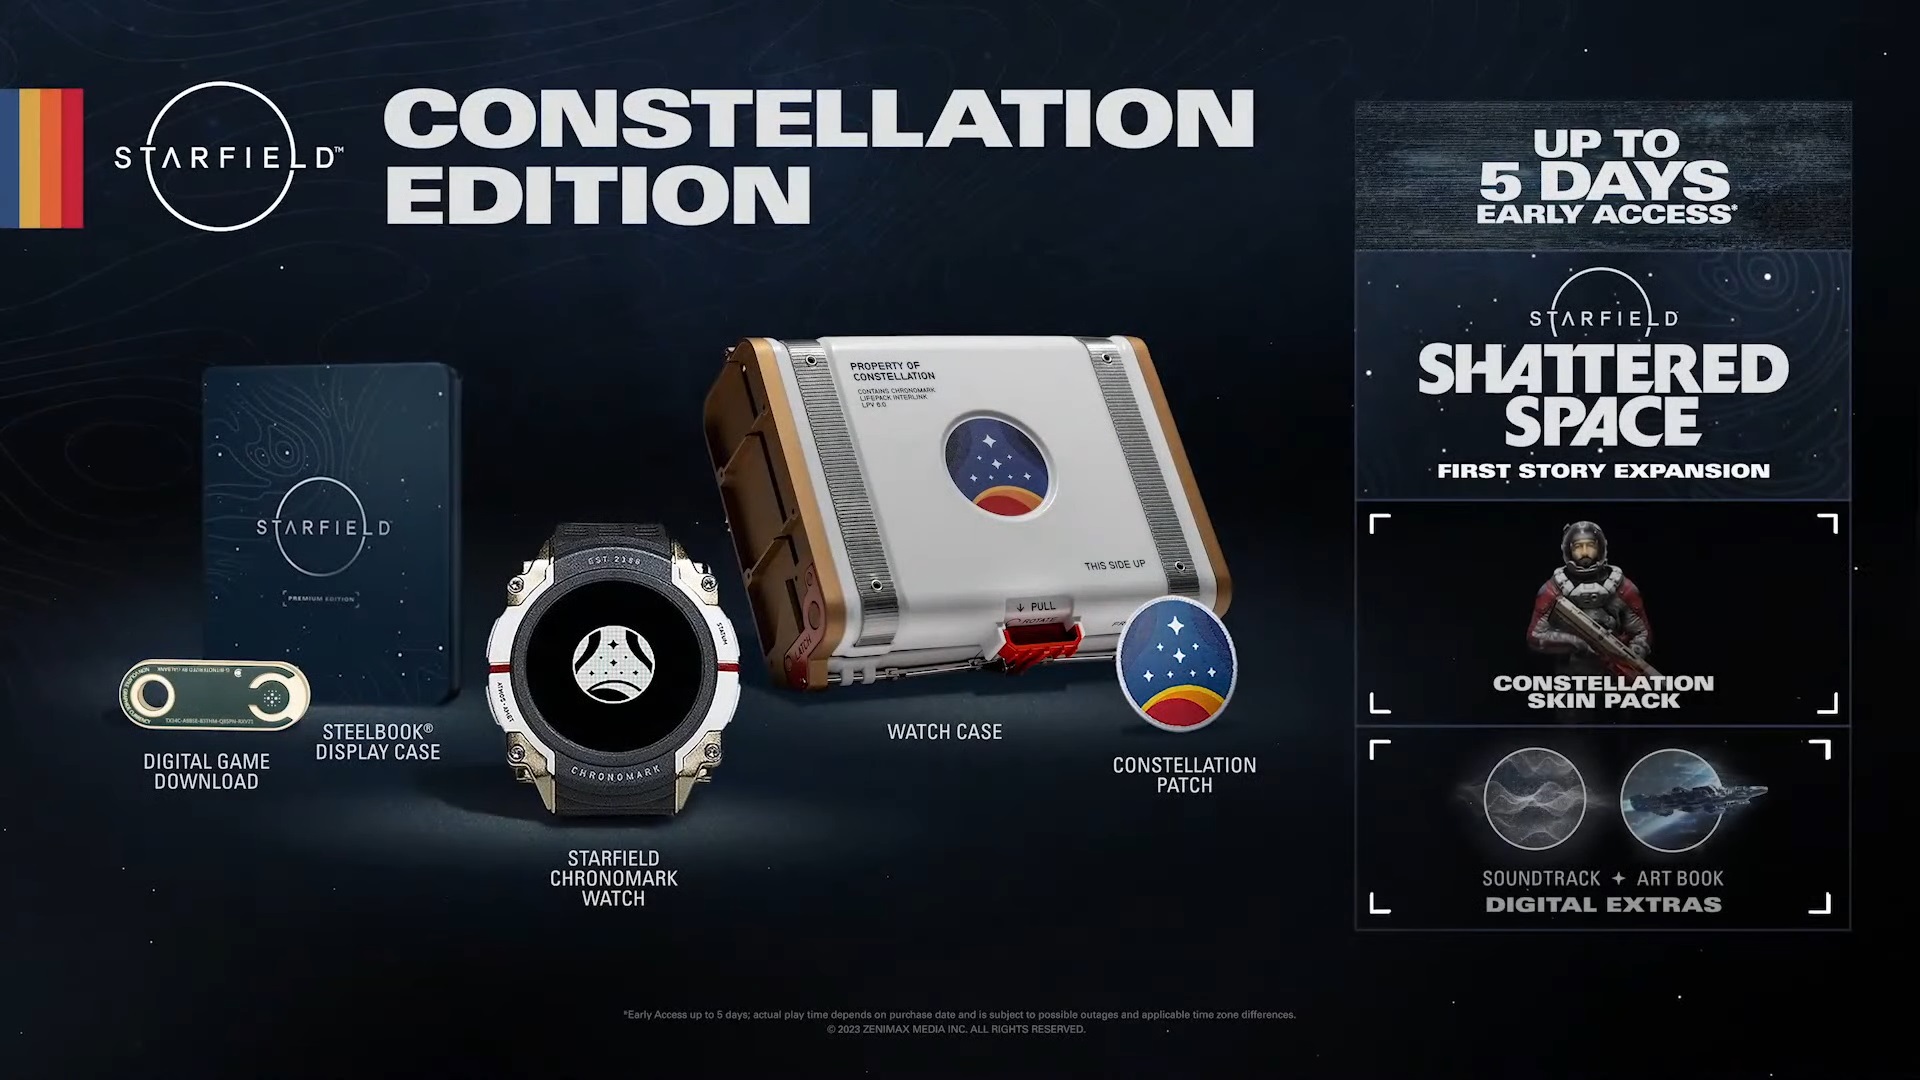 Starfield Constellation Edition details